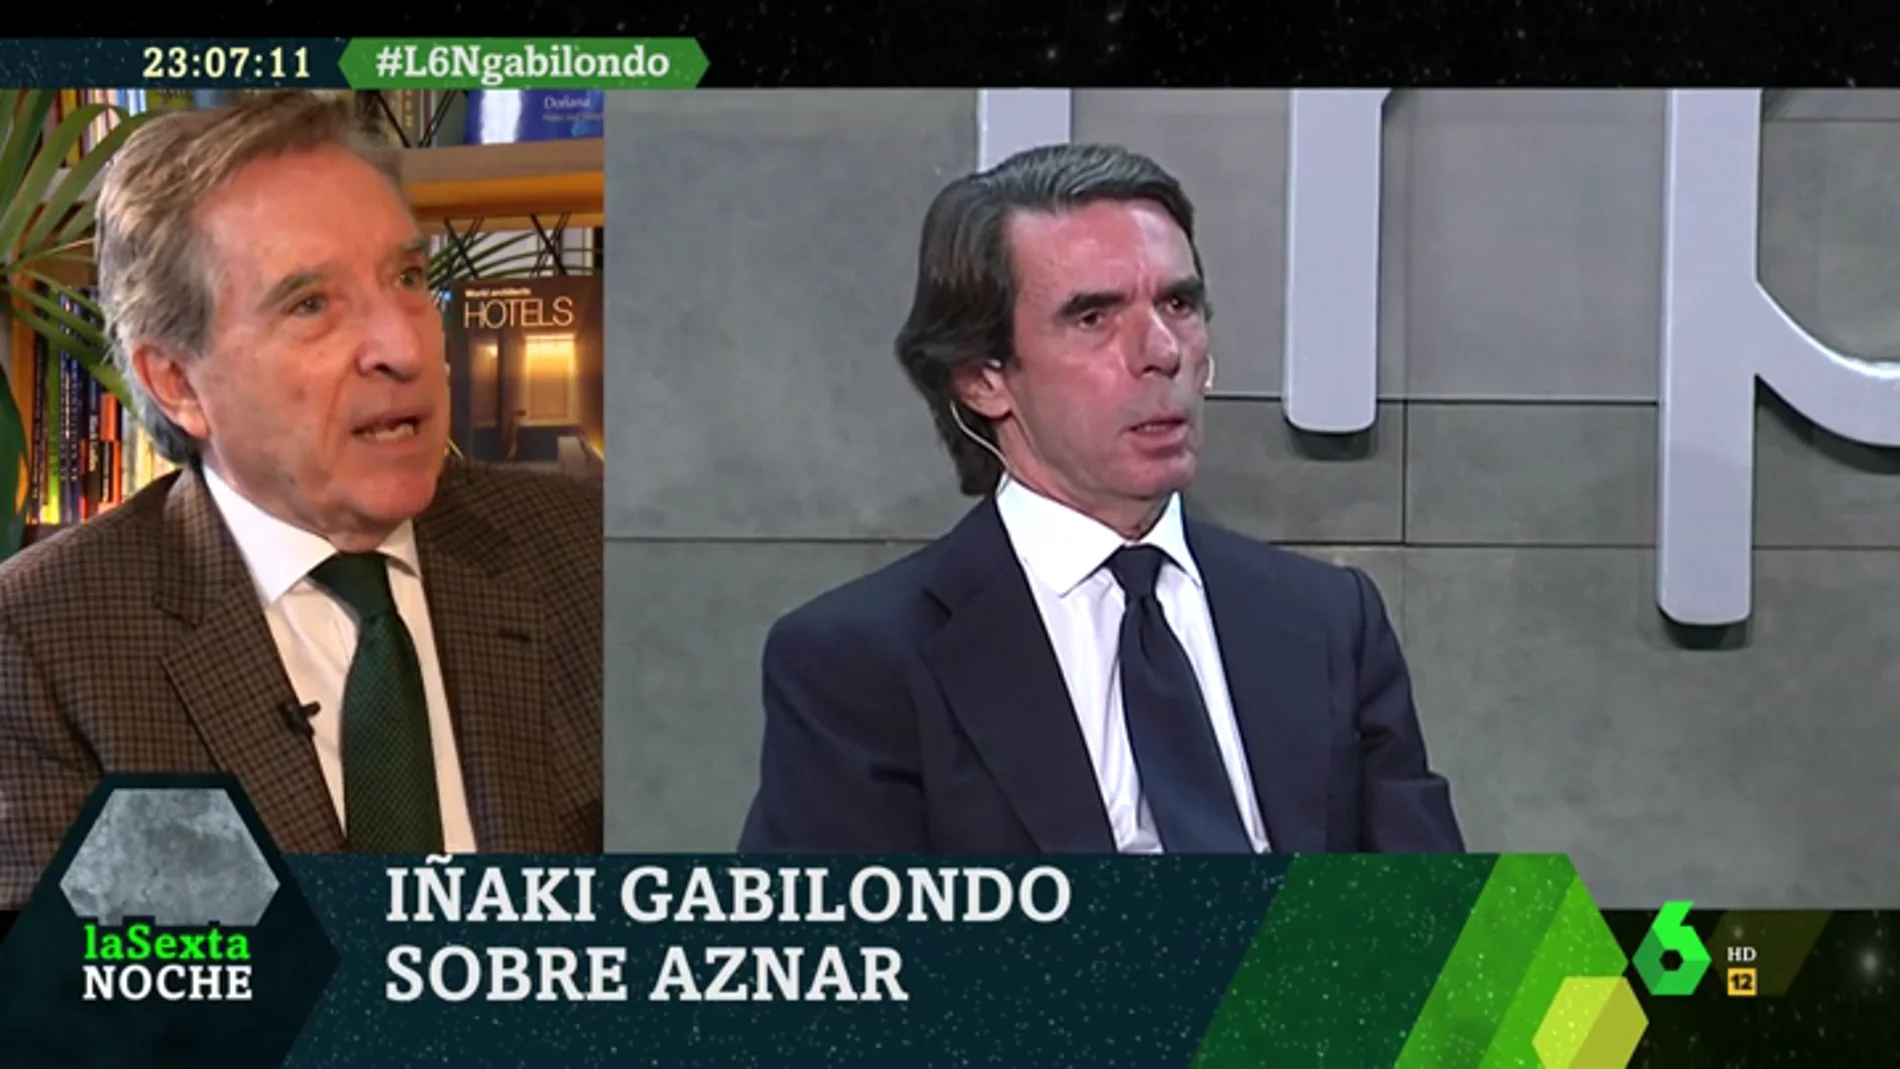 Iñaki Gabilondo, sobre Aznar y Cataluña: "Él sueña con la reconquista. Está actuando como si avanzara en tierra de infieles"